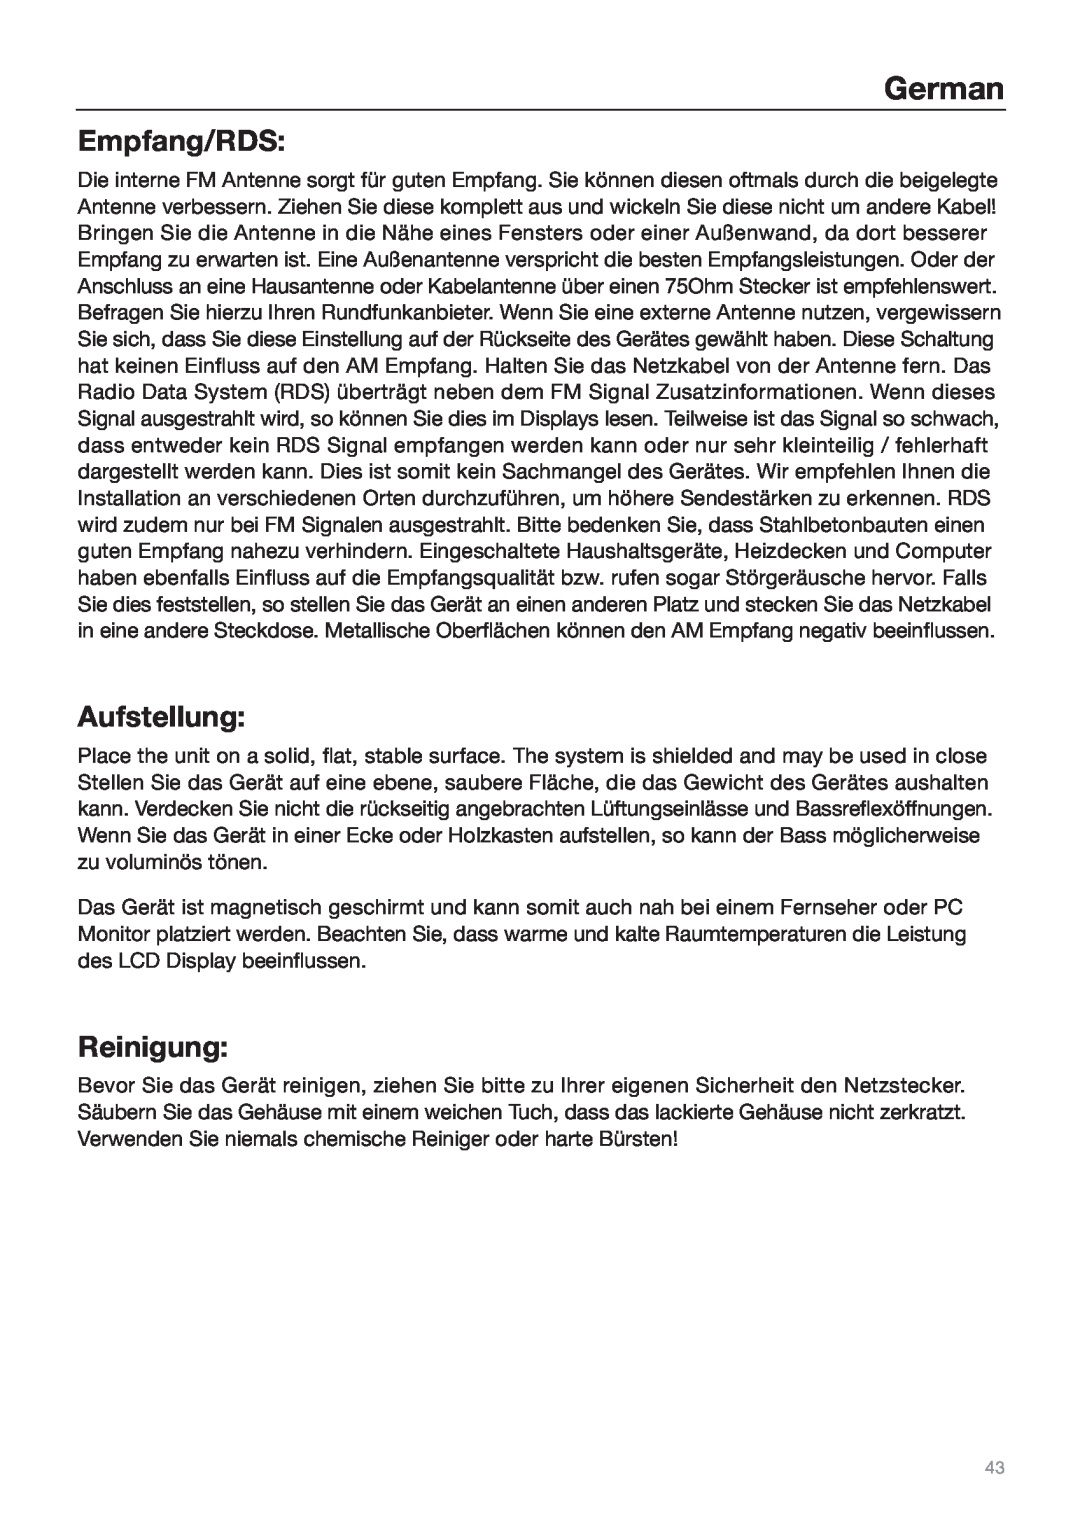 Tivoli Audio Sound System owner manual Empfang/RDS, Aufstellung, Reinigung, German 